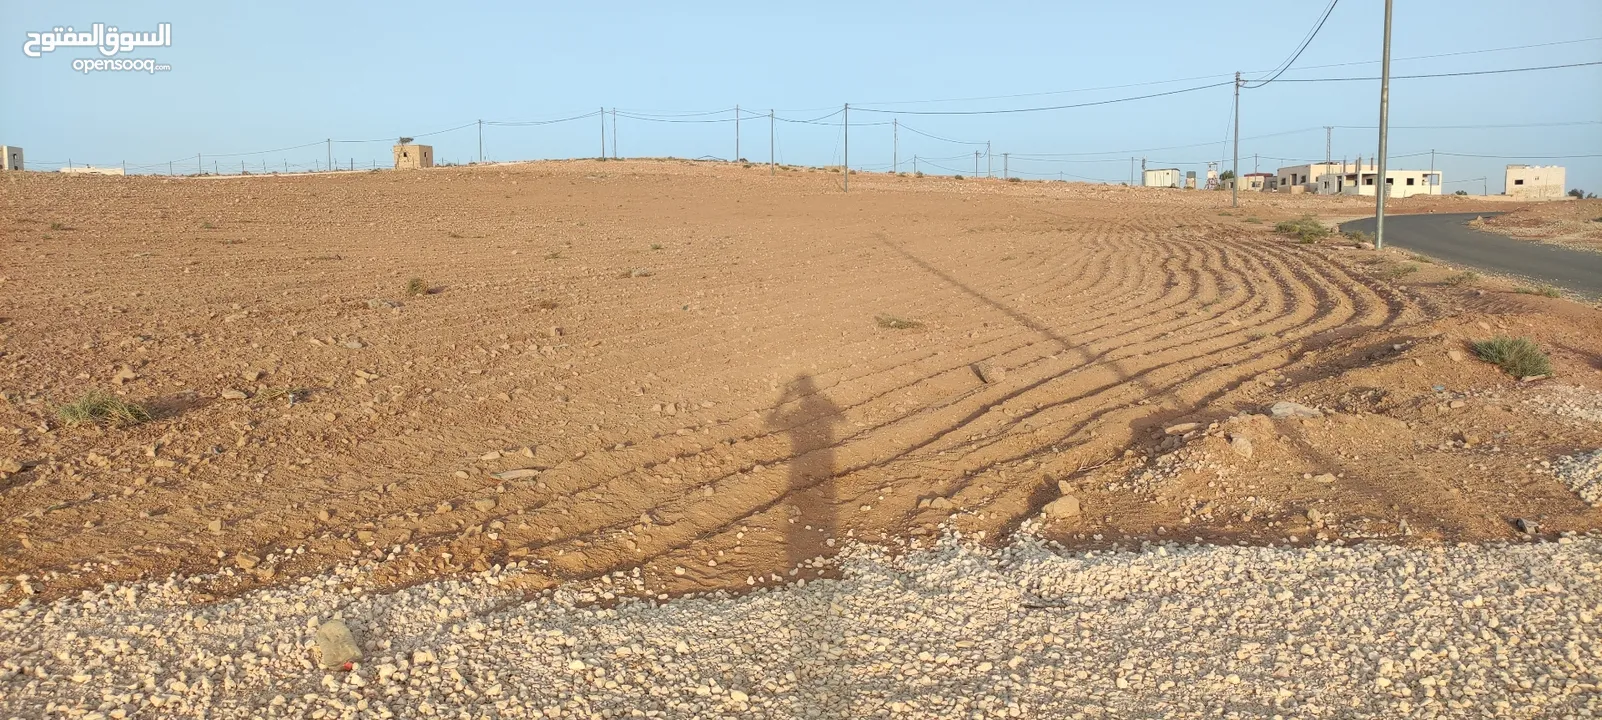 ارض للبيع شرق عمان البيضاء